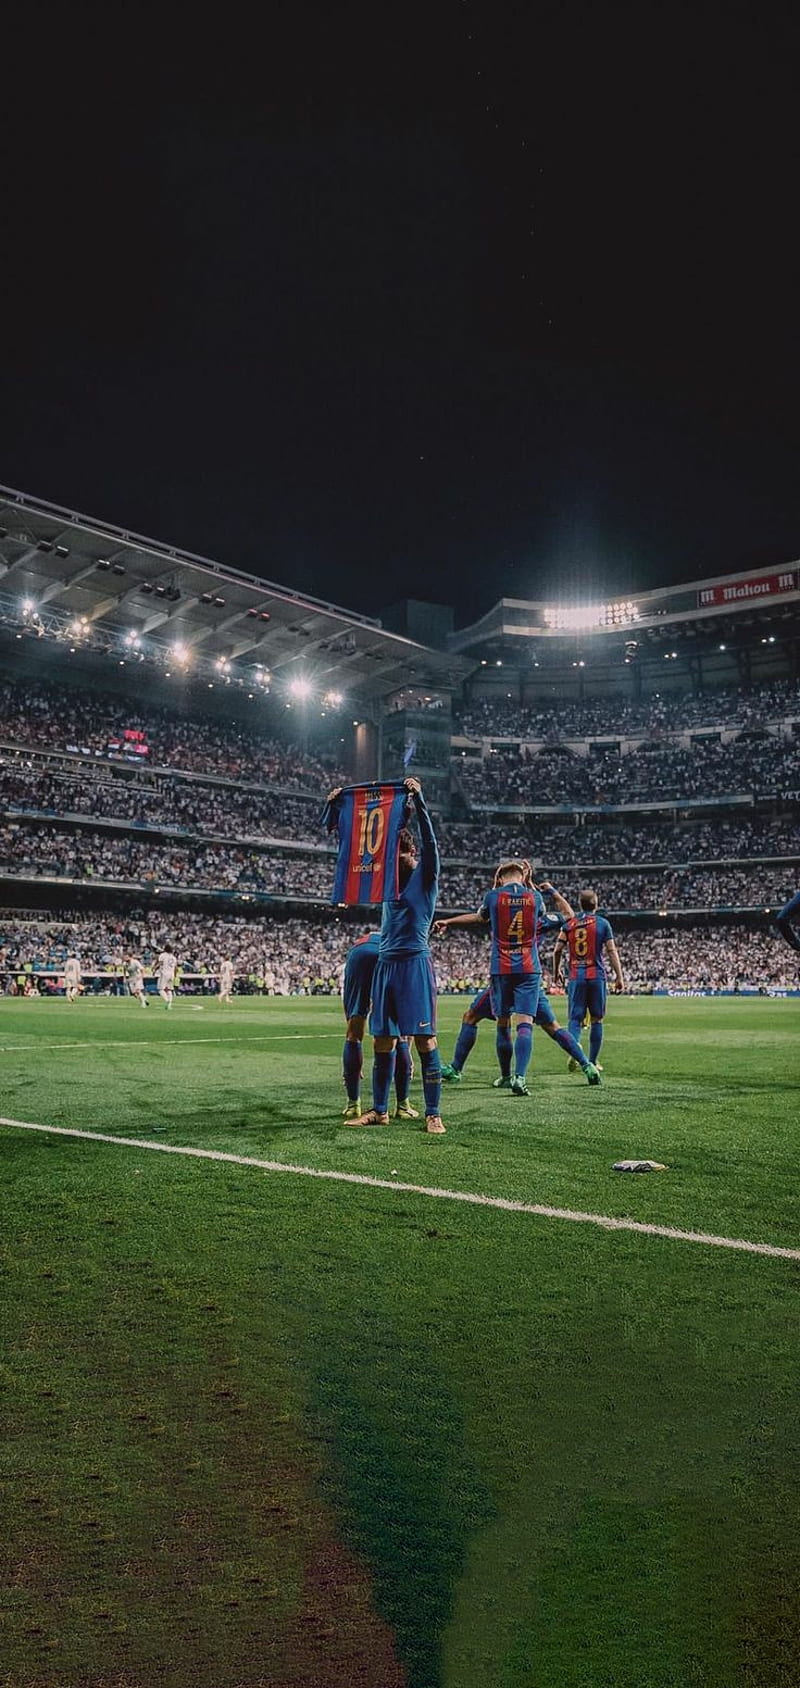 Bạn yêu thích cầu thủ Messi? Hãy chiêm ngưỡng ngay bức ảnh nền rực rỡ sắc màu của anh ta trên đội tuyển Barca. Messi wallpaper sẽ mang đến cho bạn không gian máy tính hoàn hảo và phong cách.